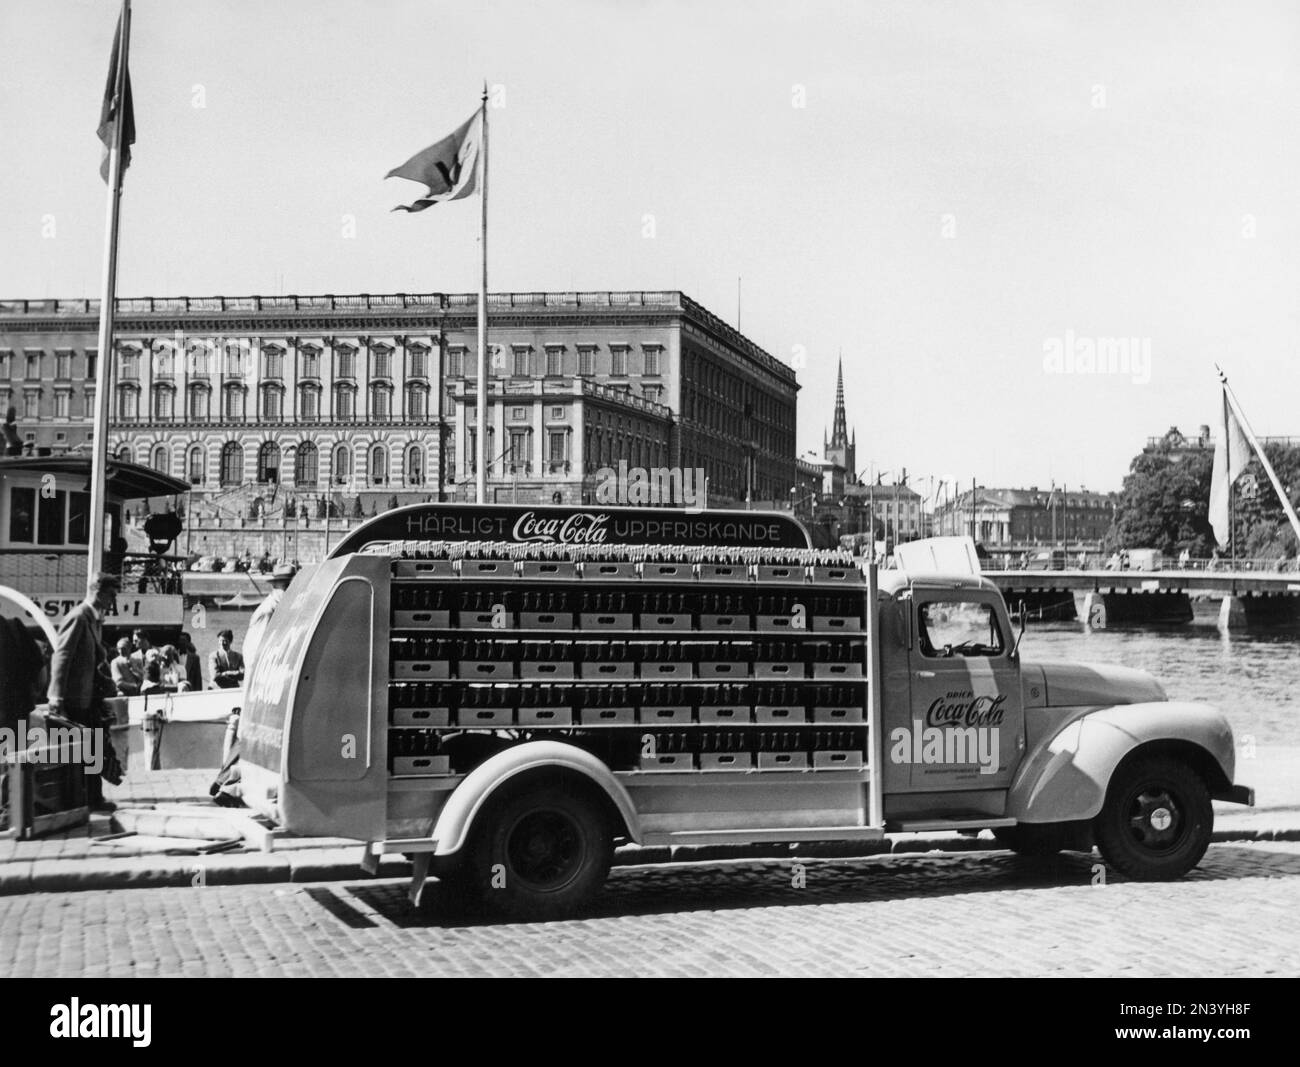 Coca cola negli anni '1950s. Nel 1 gennaio 1953 la Coca-Cola è stata inizialmente autorizzata ad essere fabbricata e venduta in Svezia, essendo precedentemente limitata dalle vendite in Svezia, poiché il contenuto di Coca-Cola includeva sostanze vietate come l'acido fosforico e la caffeina. Uno dei primi camion di distribuzione della birreria Mineralvattenfabriken tre Kronor caricato con bottiglie Coca-Cola raffigurate a Stoccolma con il castello reale sullo sfondo. Veicoli Volvo modello L34 modificati e verniciati in rosso per l'uso esclusivo sui veicoli Coca-Cola. Coca-Cola era presto con la pubblicità sui loro veicoli. Svezia 195 Foto Stock